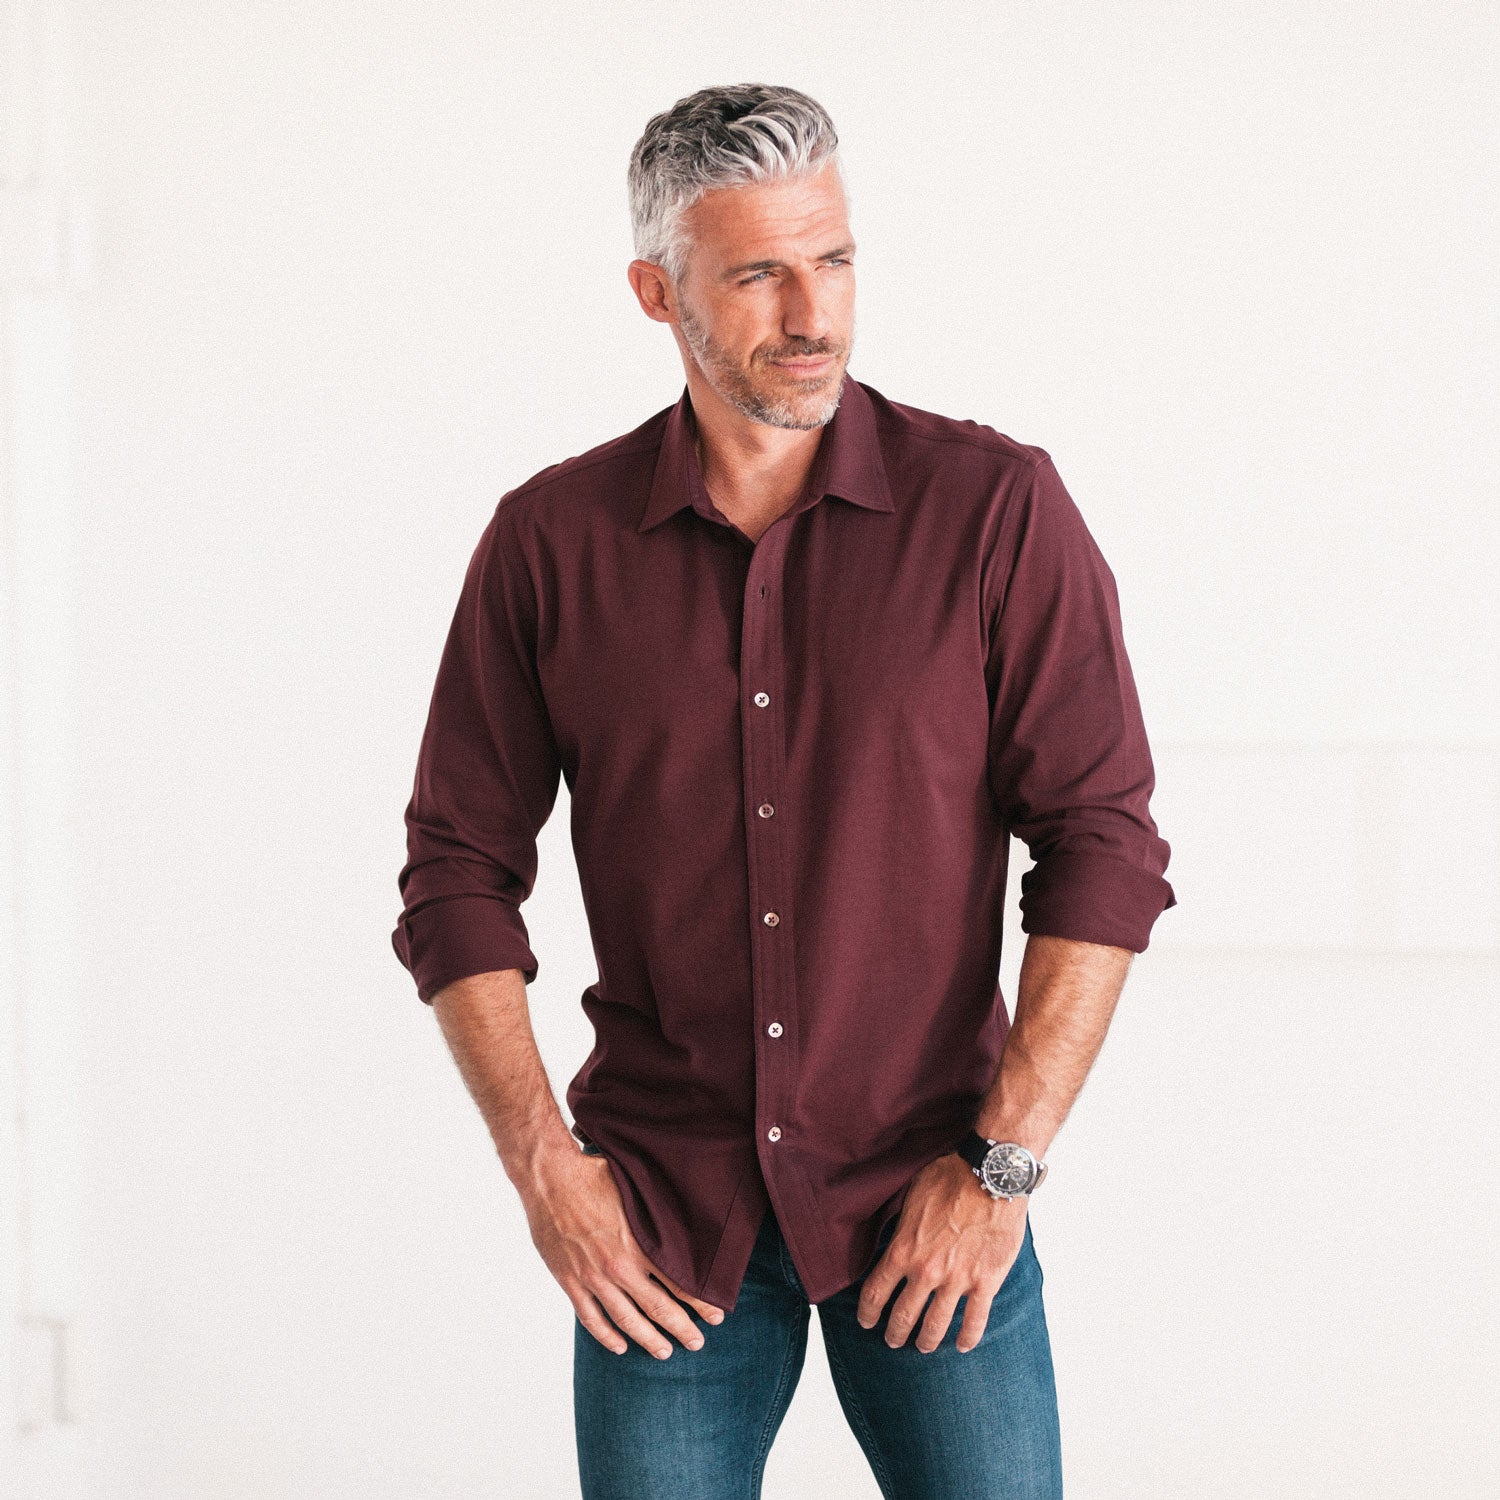 Essential T-Shirt Shirt - Burgundy Cotton Jersey